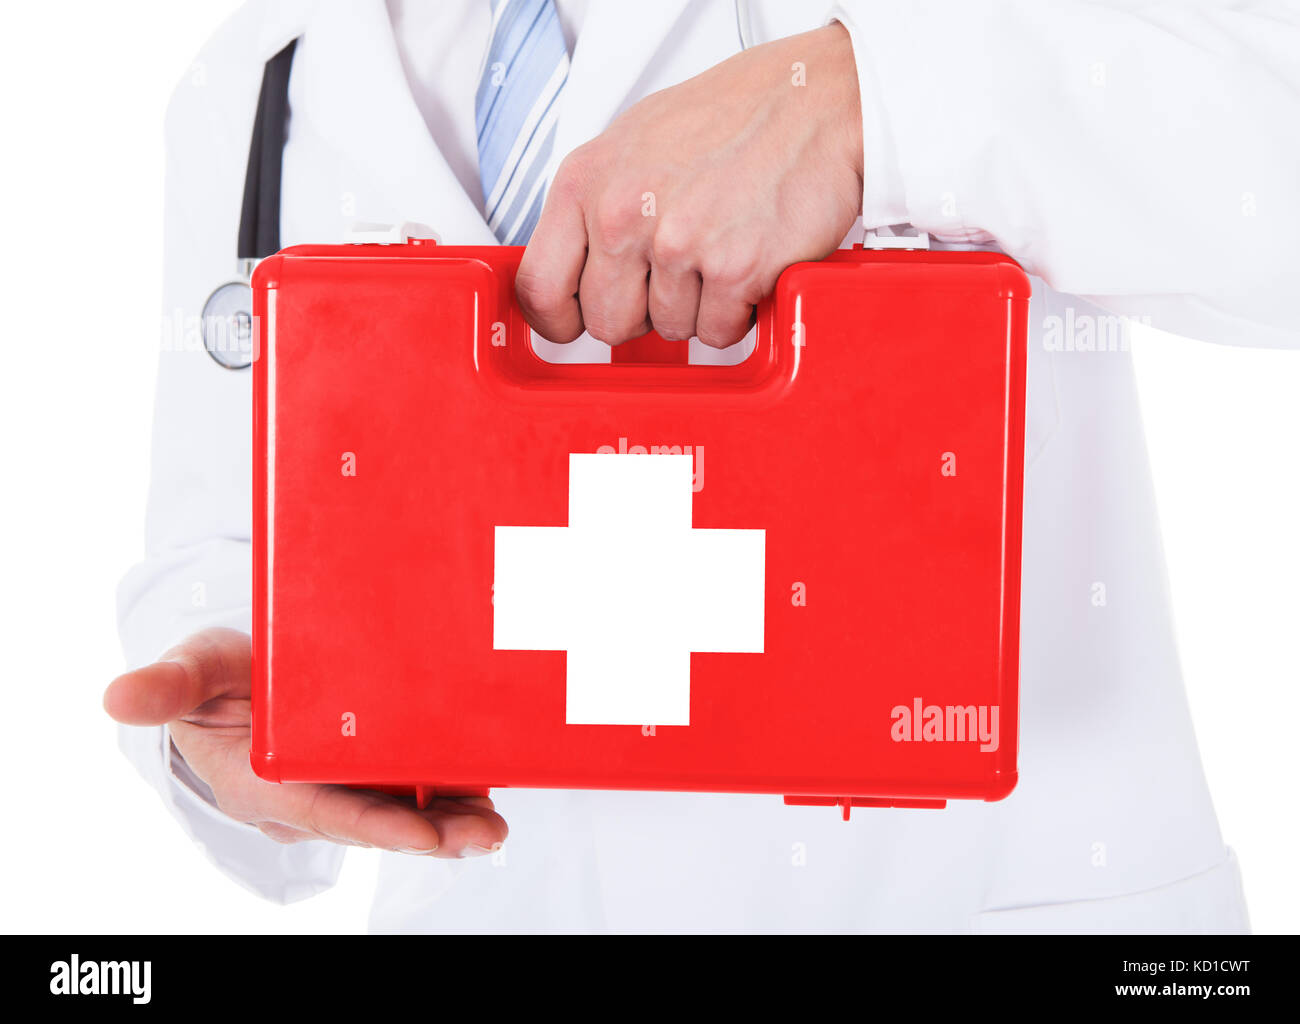 Помощь врача согласование. Коробка скорой помощи. Человек с аптечкой. Аптечка для врача на самолете с красным крестом. Красный ящик скорой помощи-.